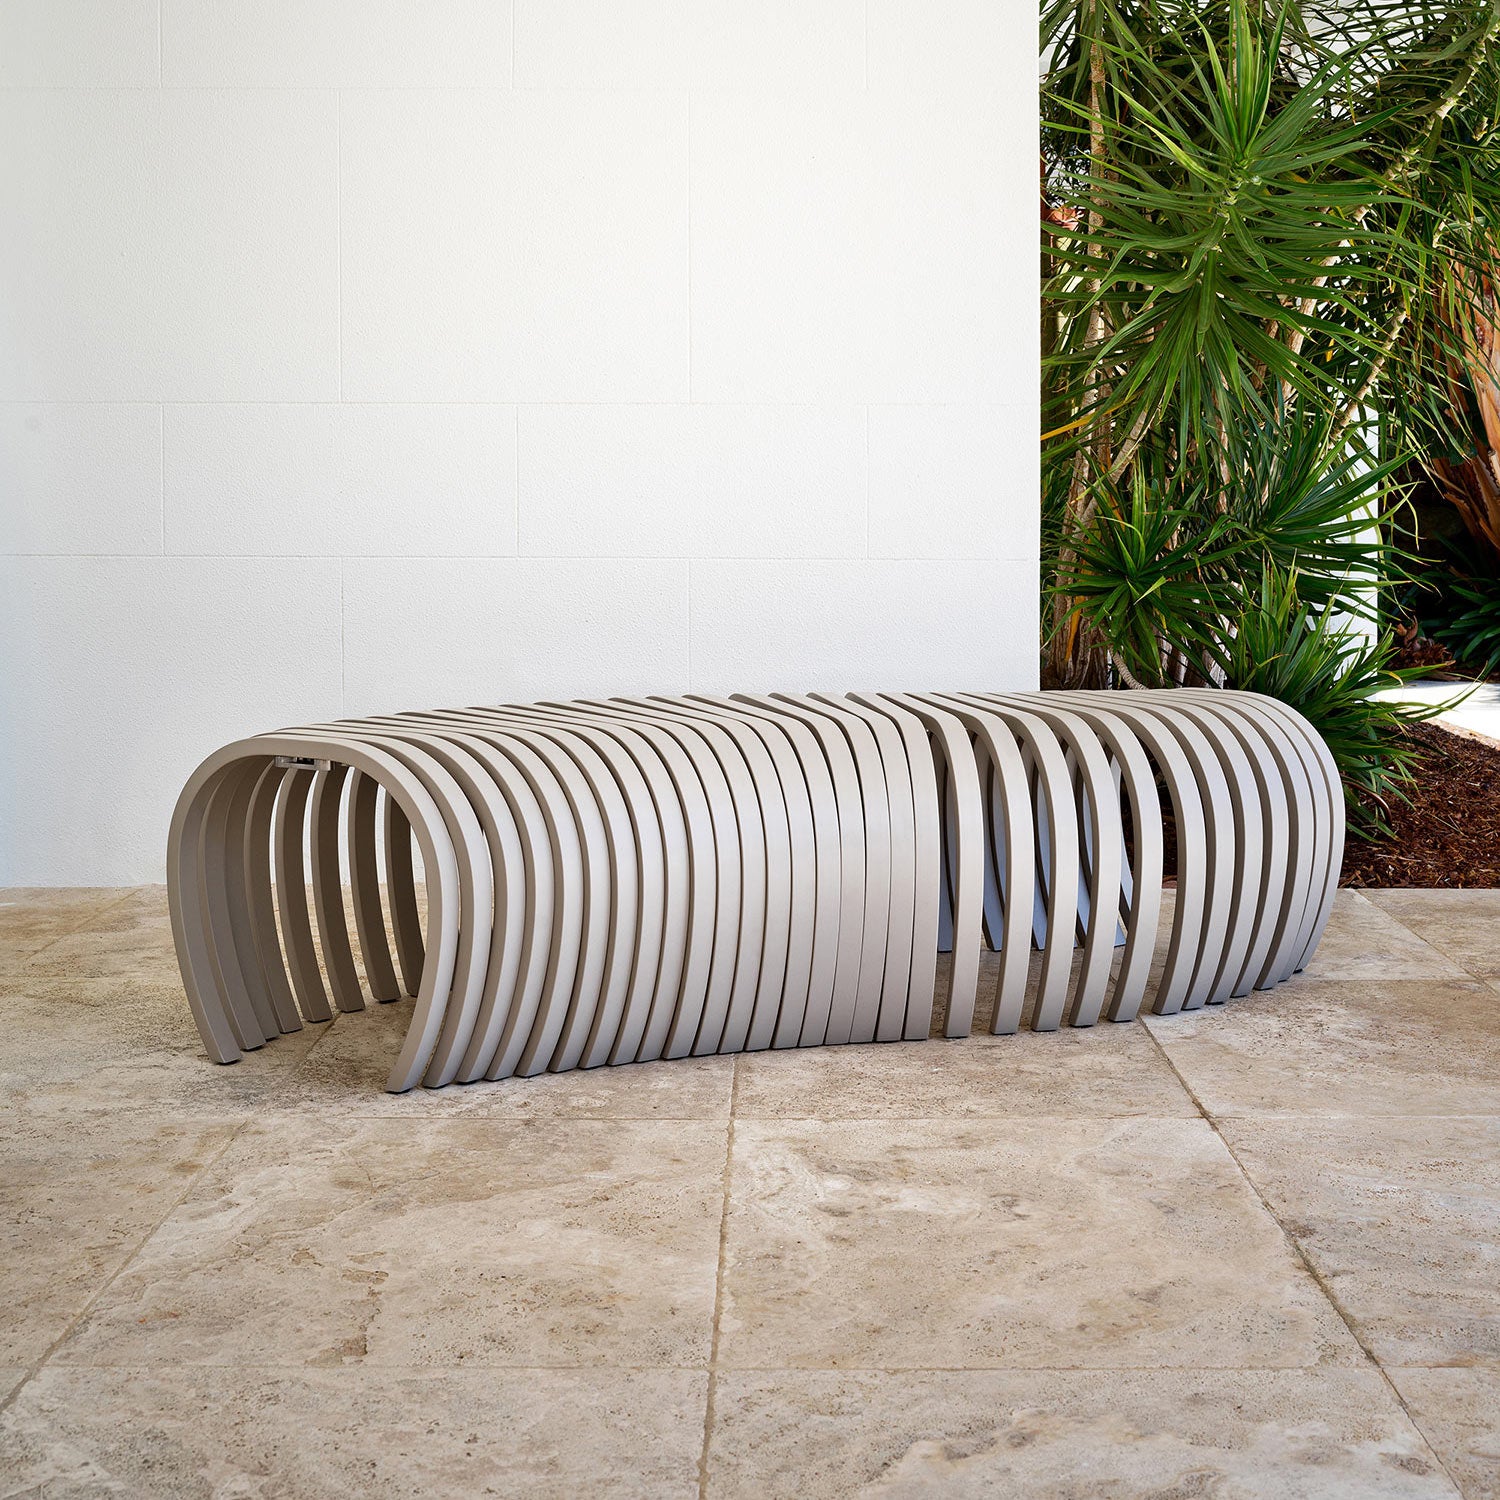 Ribs Bench Outdoor | Aluminium Metal Outdoor Furniture | Stefan Lie | DesignByThem